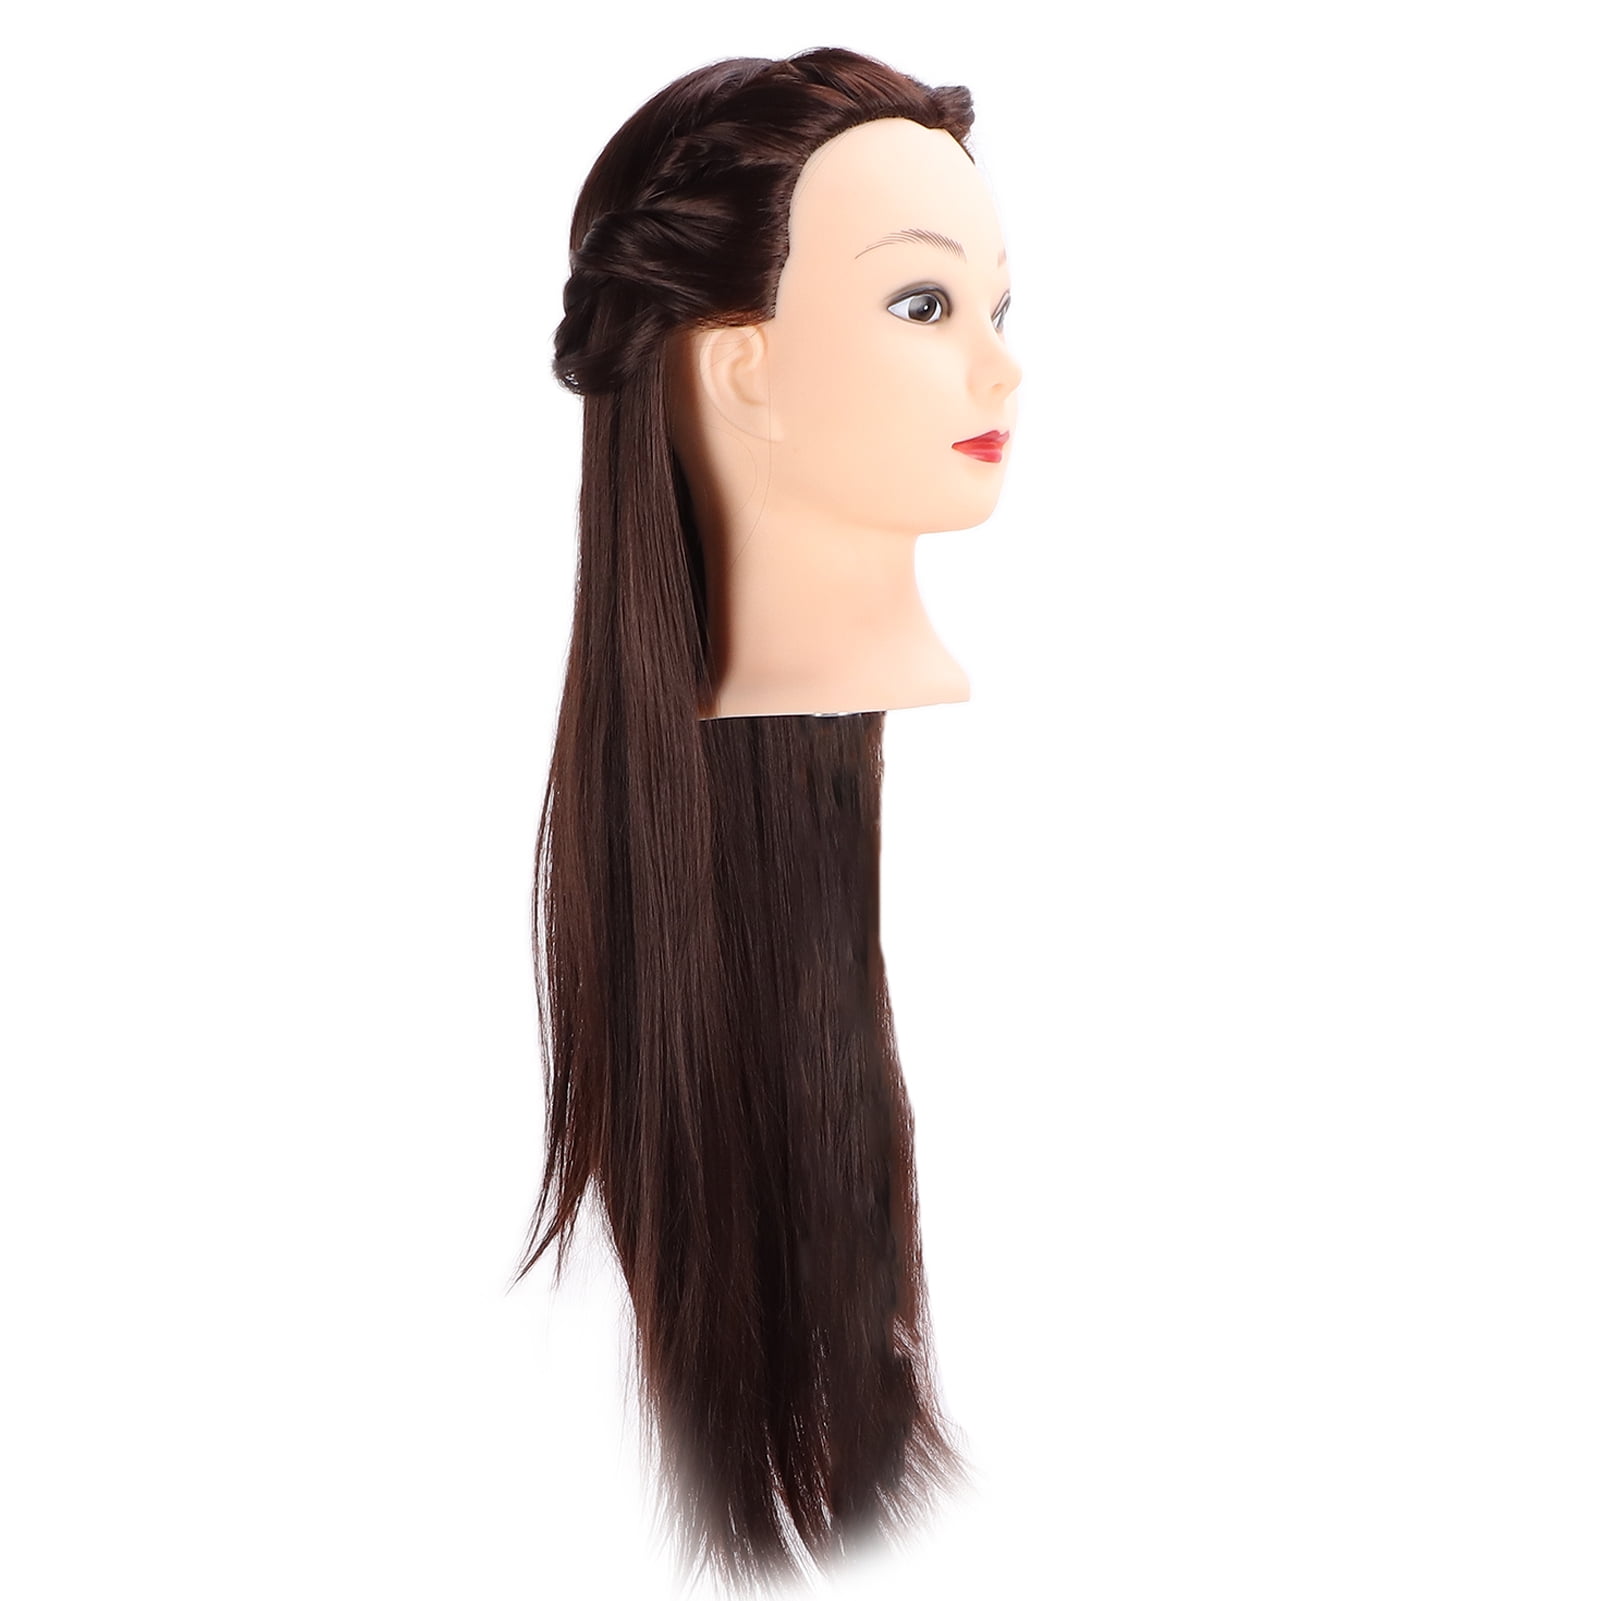 Hair Mannequin Head, Safe Sanitary Easy Use Hair Braiding Practice